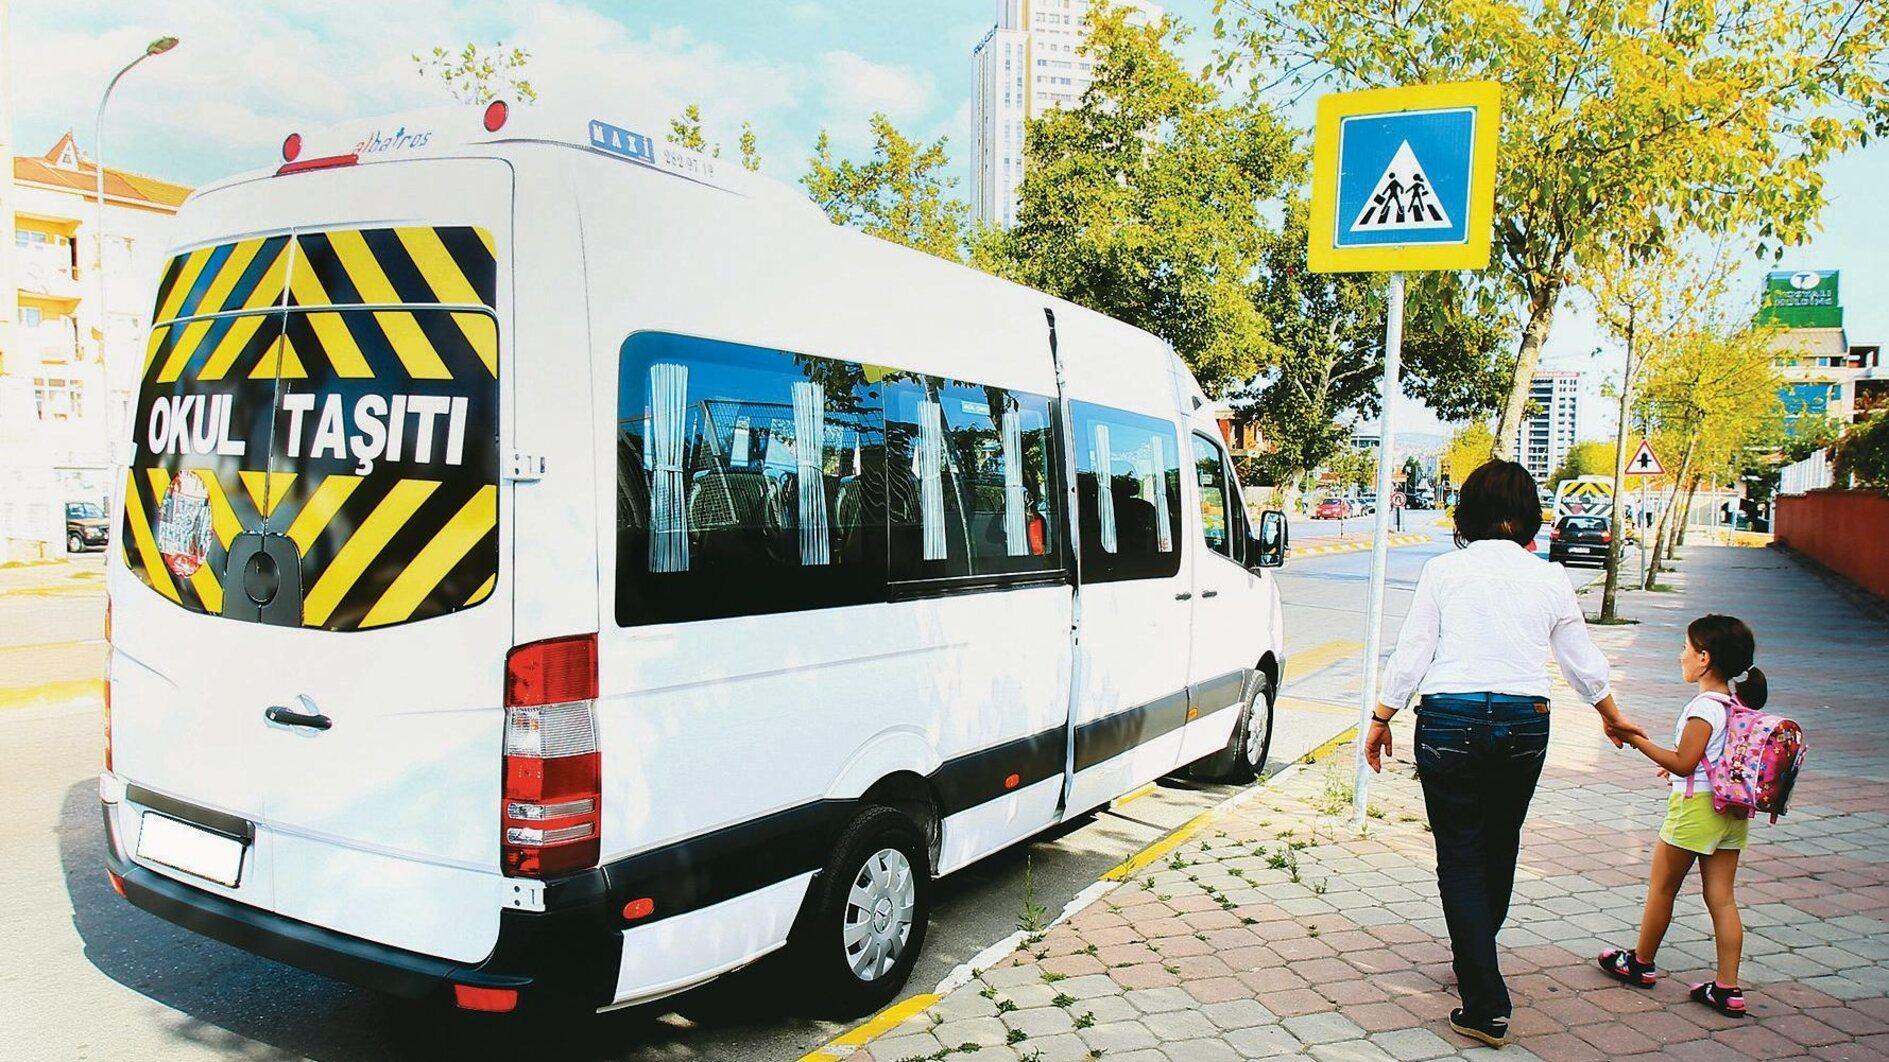 Schoolbussen zonder vergunning in Istanbul baren zorgen